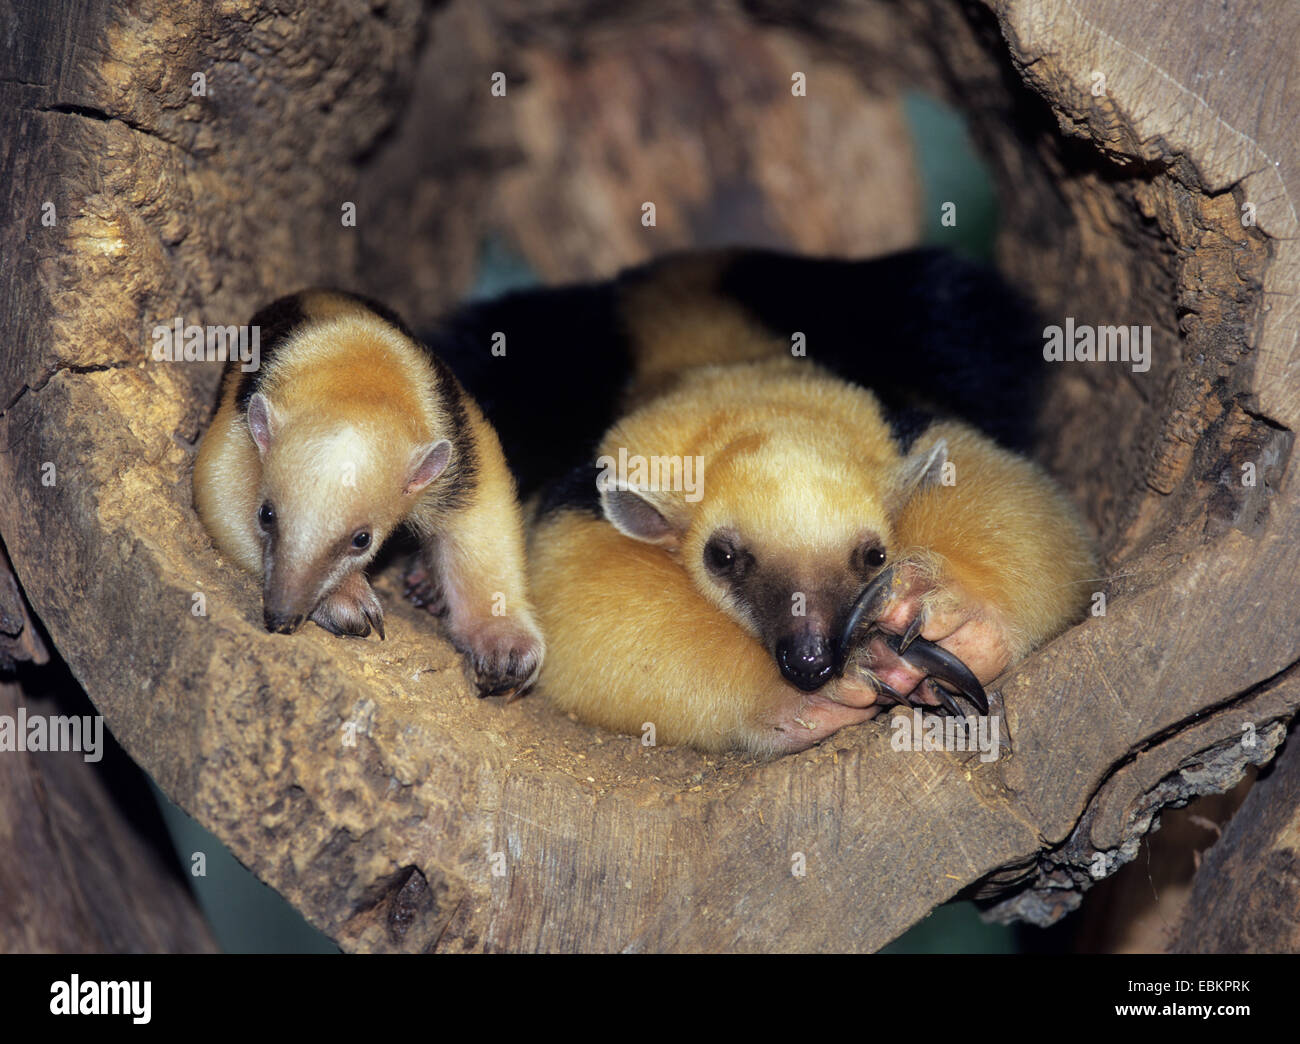 El oso melero (Tamandua tetradactyla), madre y niño yaciendo juntos en un agujero de árbol Foto de stock